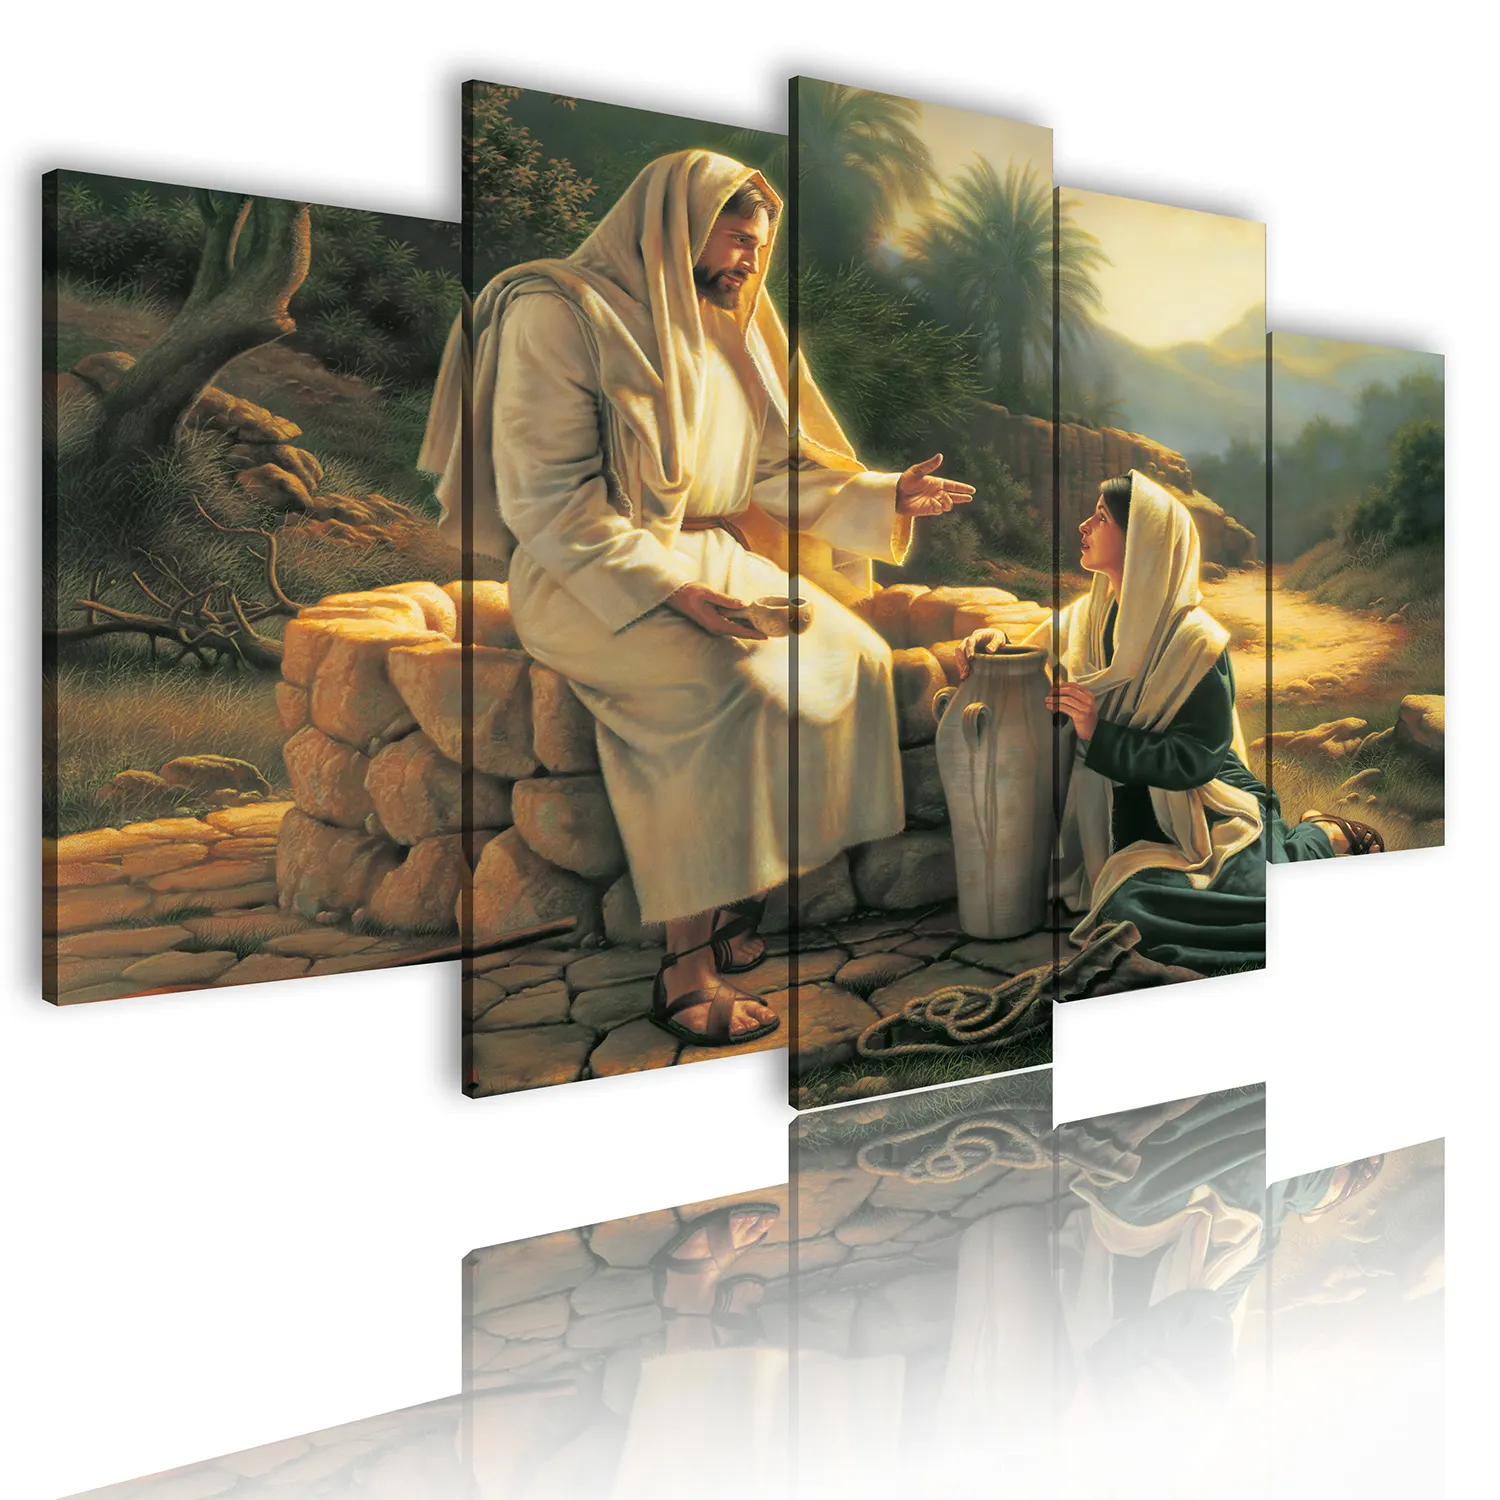 الحيوان البوب بوذا غرفة ديكور يسوع هدية فكرة رخيصة البند بيع شيامن المورد المطبوعة لوحة زيتية قماشية الاستنساخ